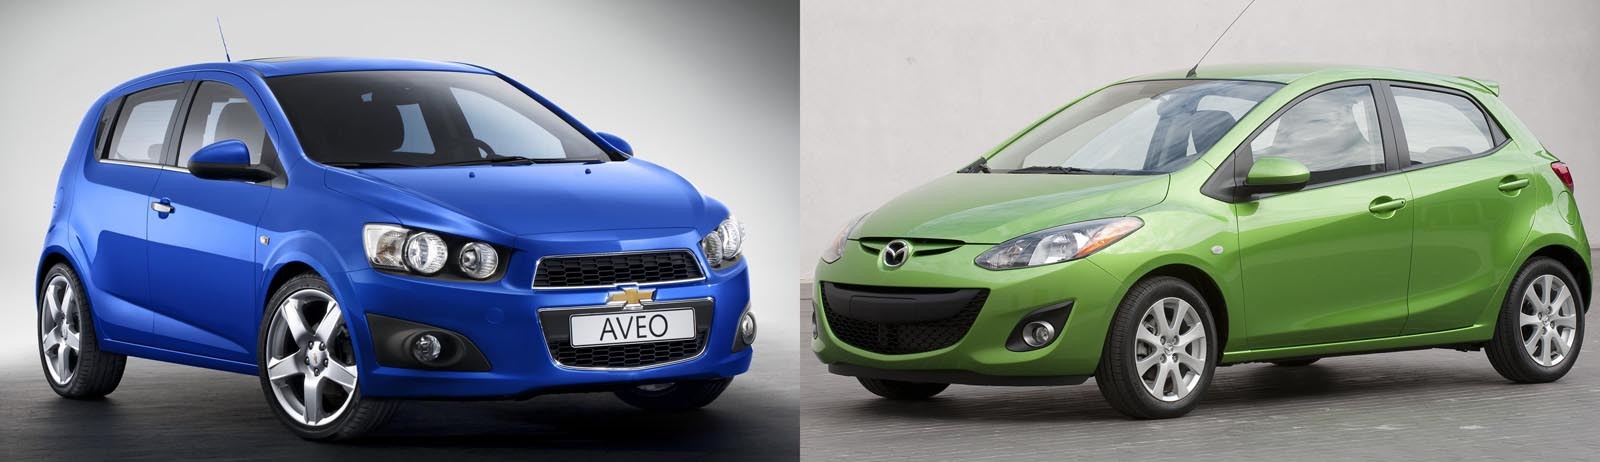 Chevrolet Aveo vs. Mazda2 facelift